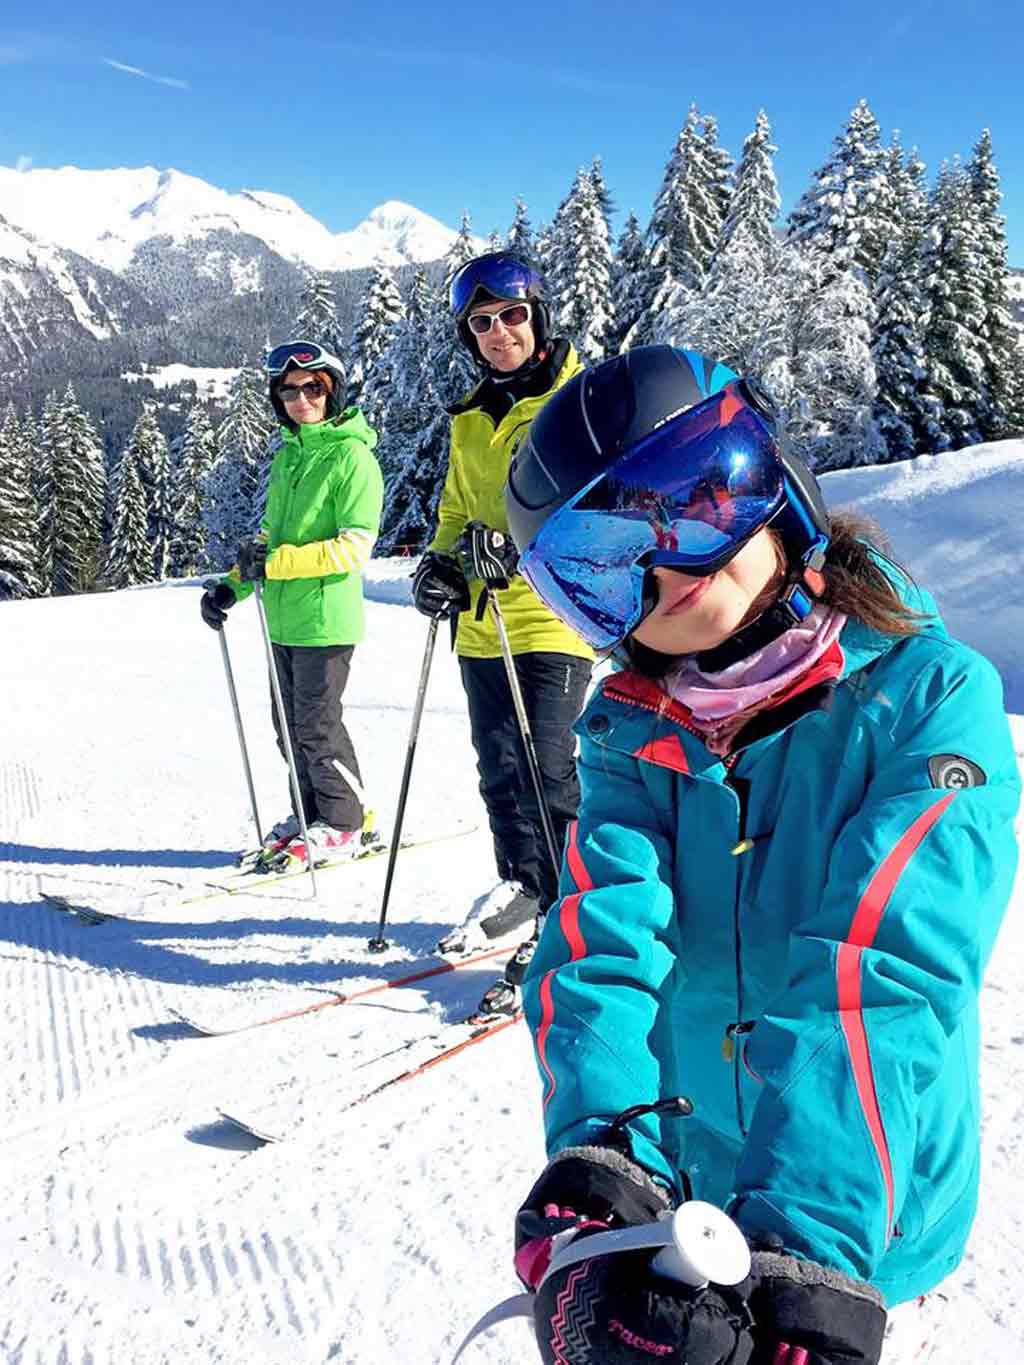 Семья лыжников. Семья на горных лыжах. Семья горнолыжников. Горнолыжный спорт семейный. Горы снег лыжи семья.